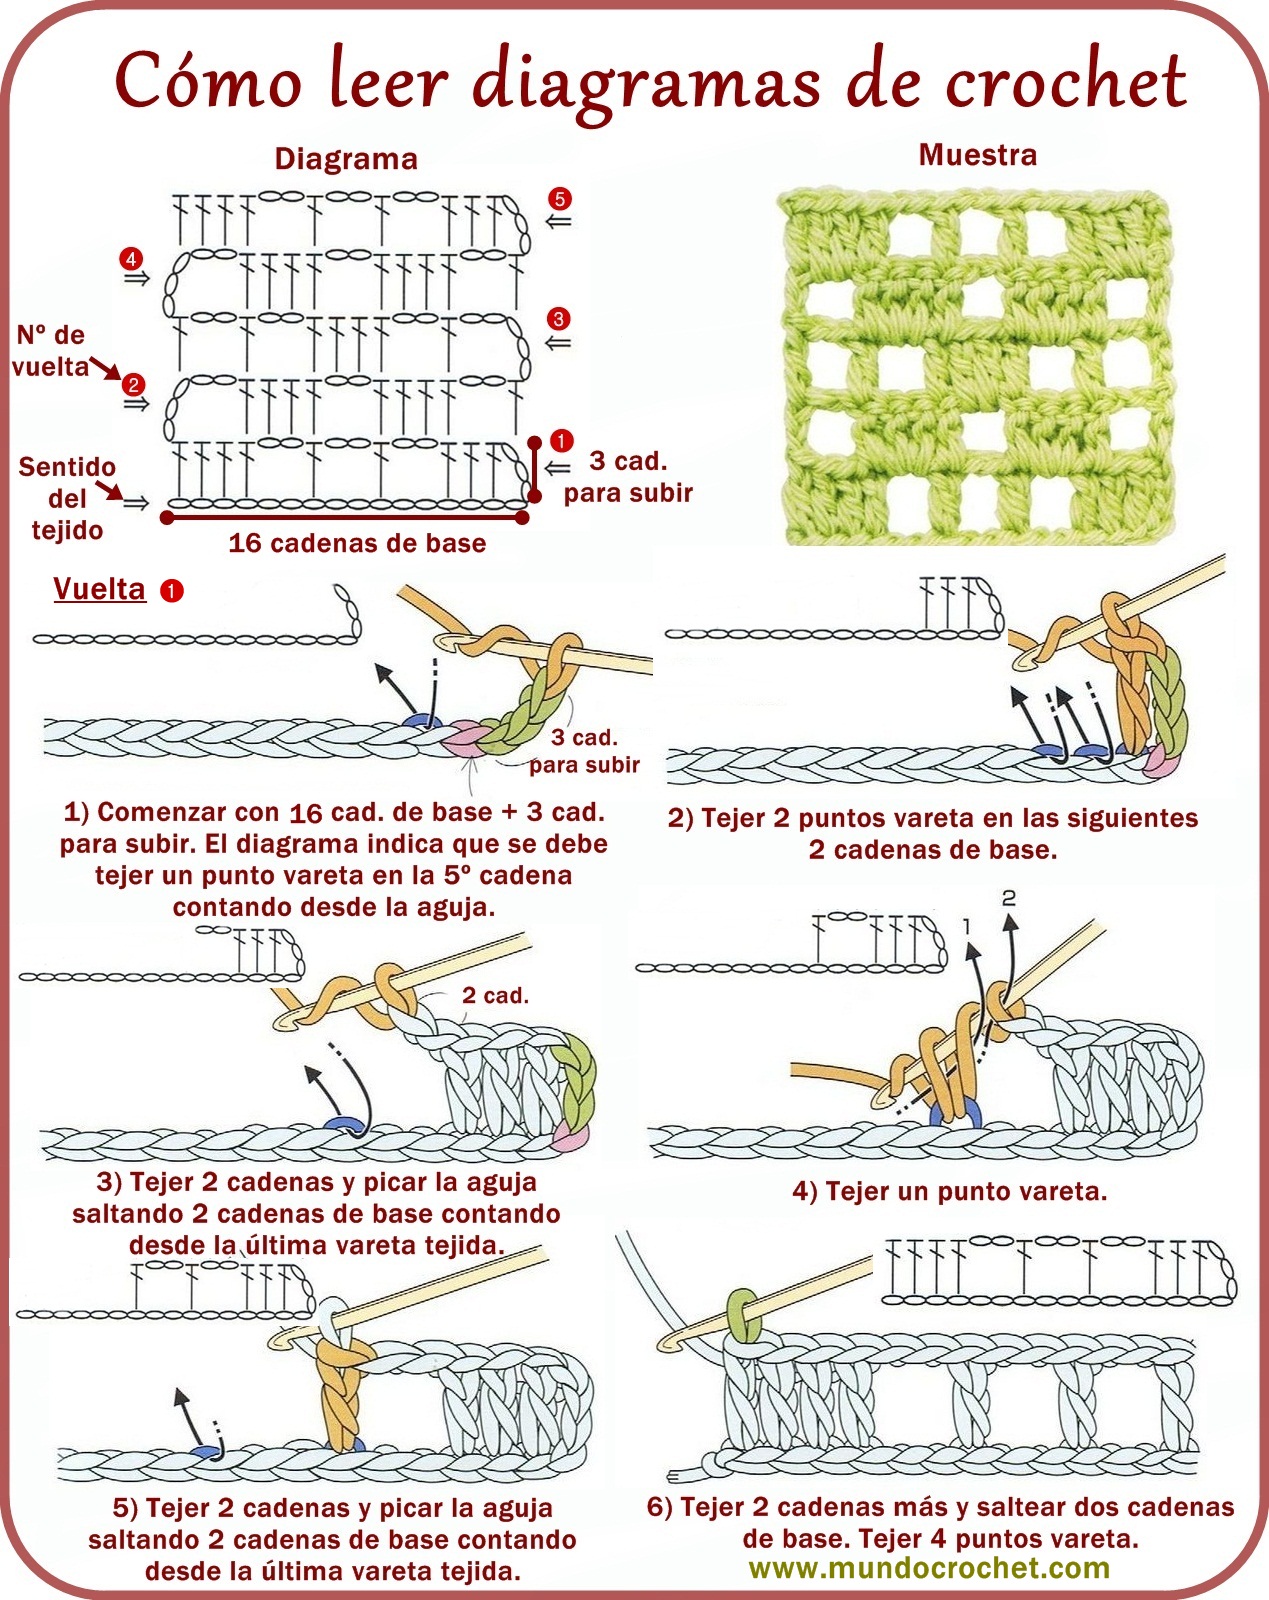 Cómo Leer Diagramas de Crochet Fácil y Muy Bien Explicado